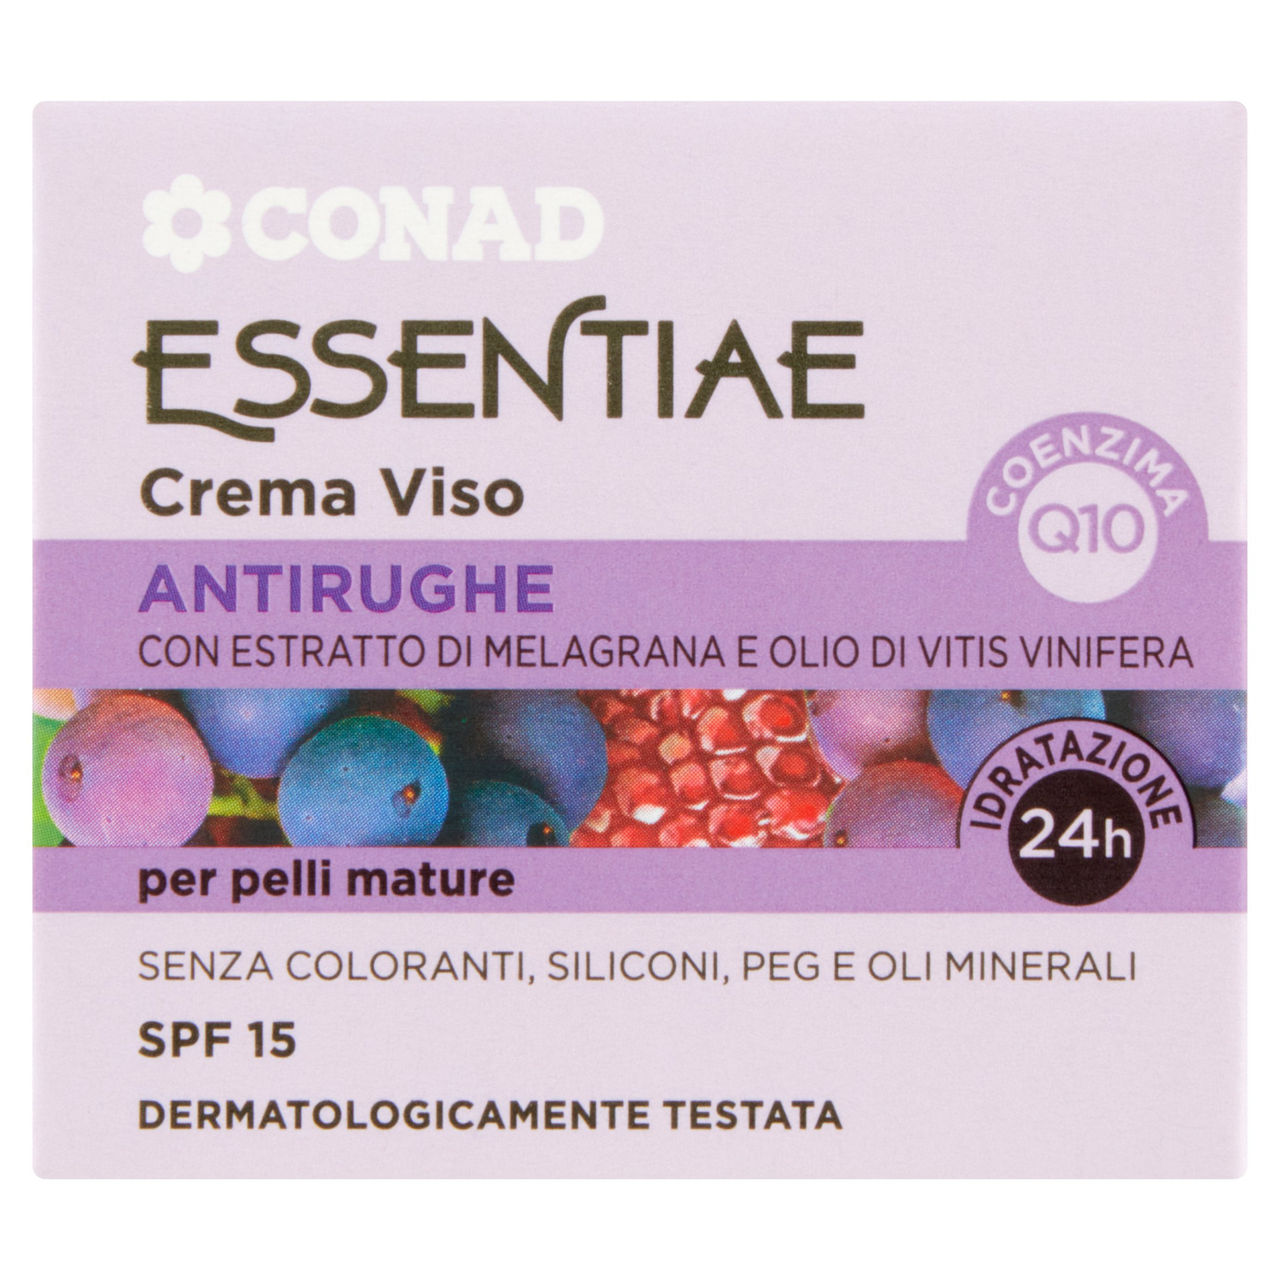 Essentiae Crema Viso Antirughe per pelli mature